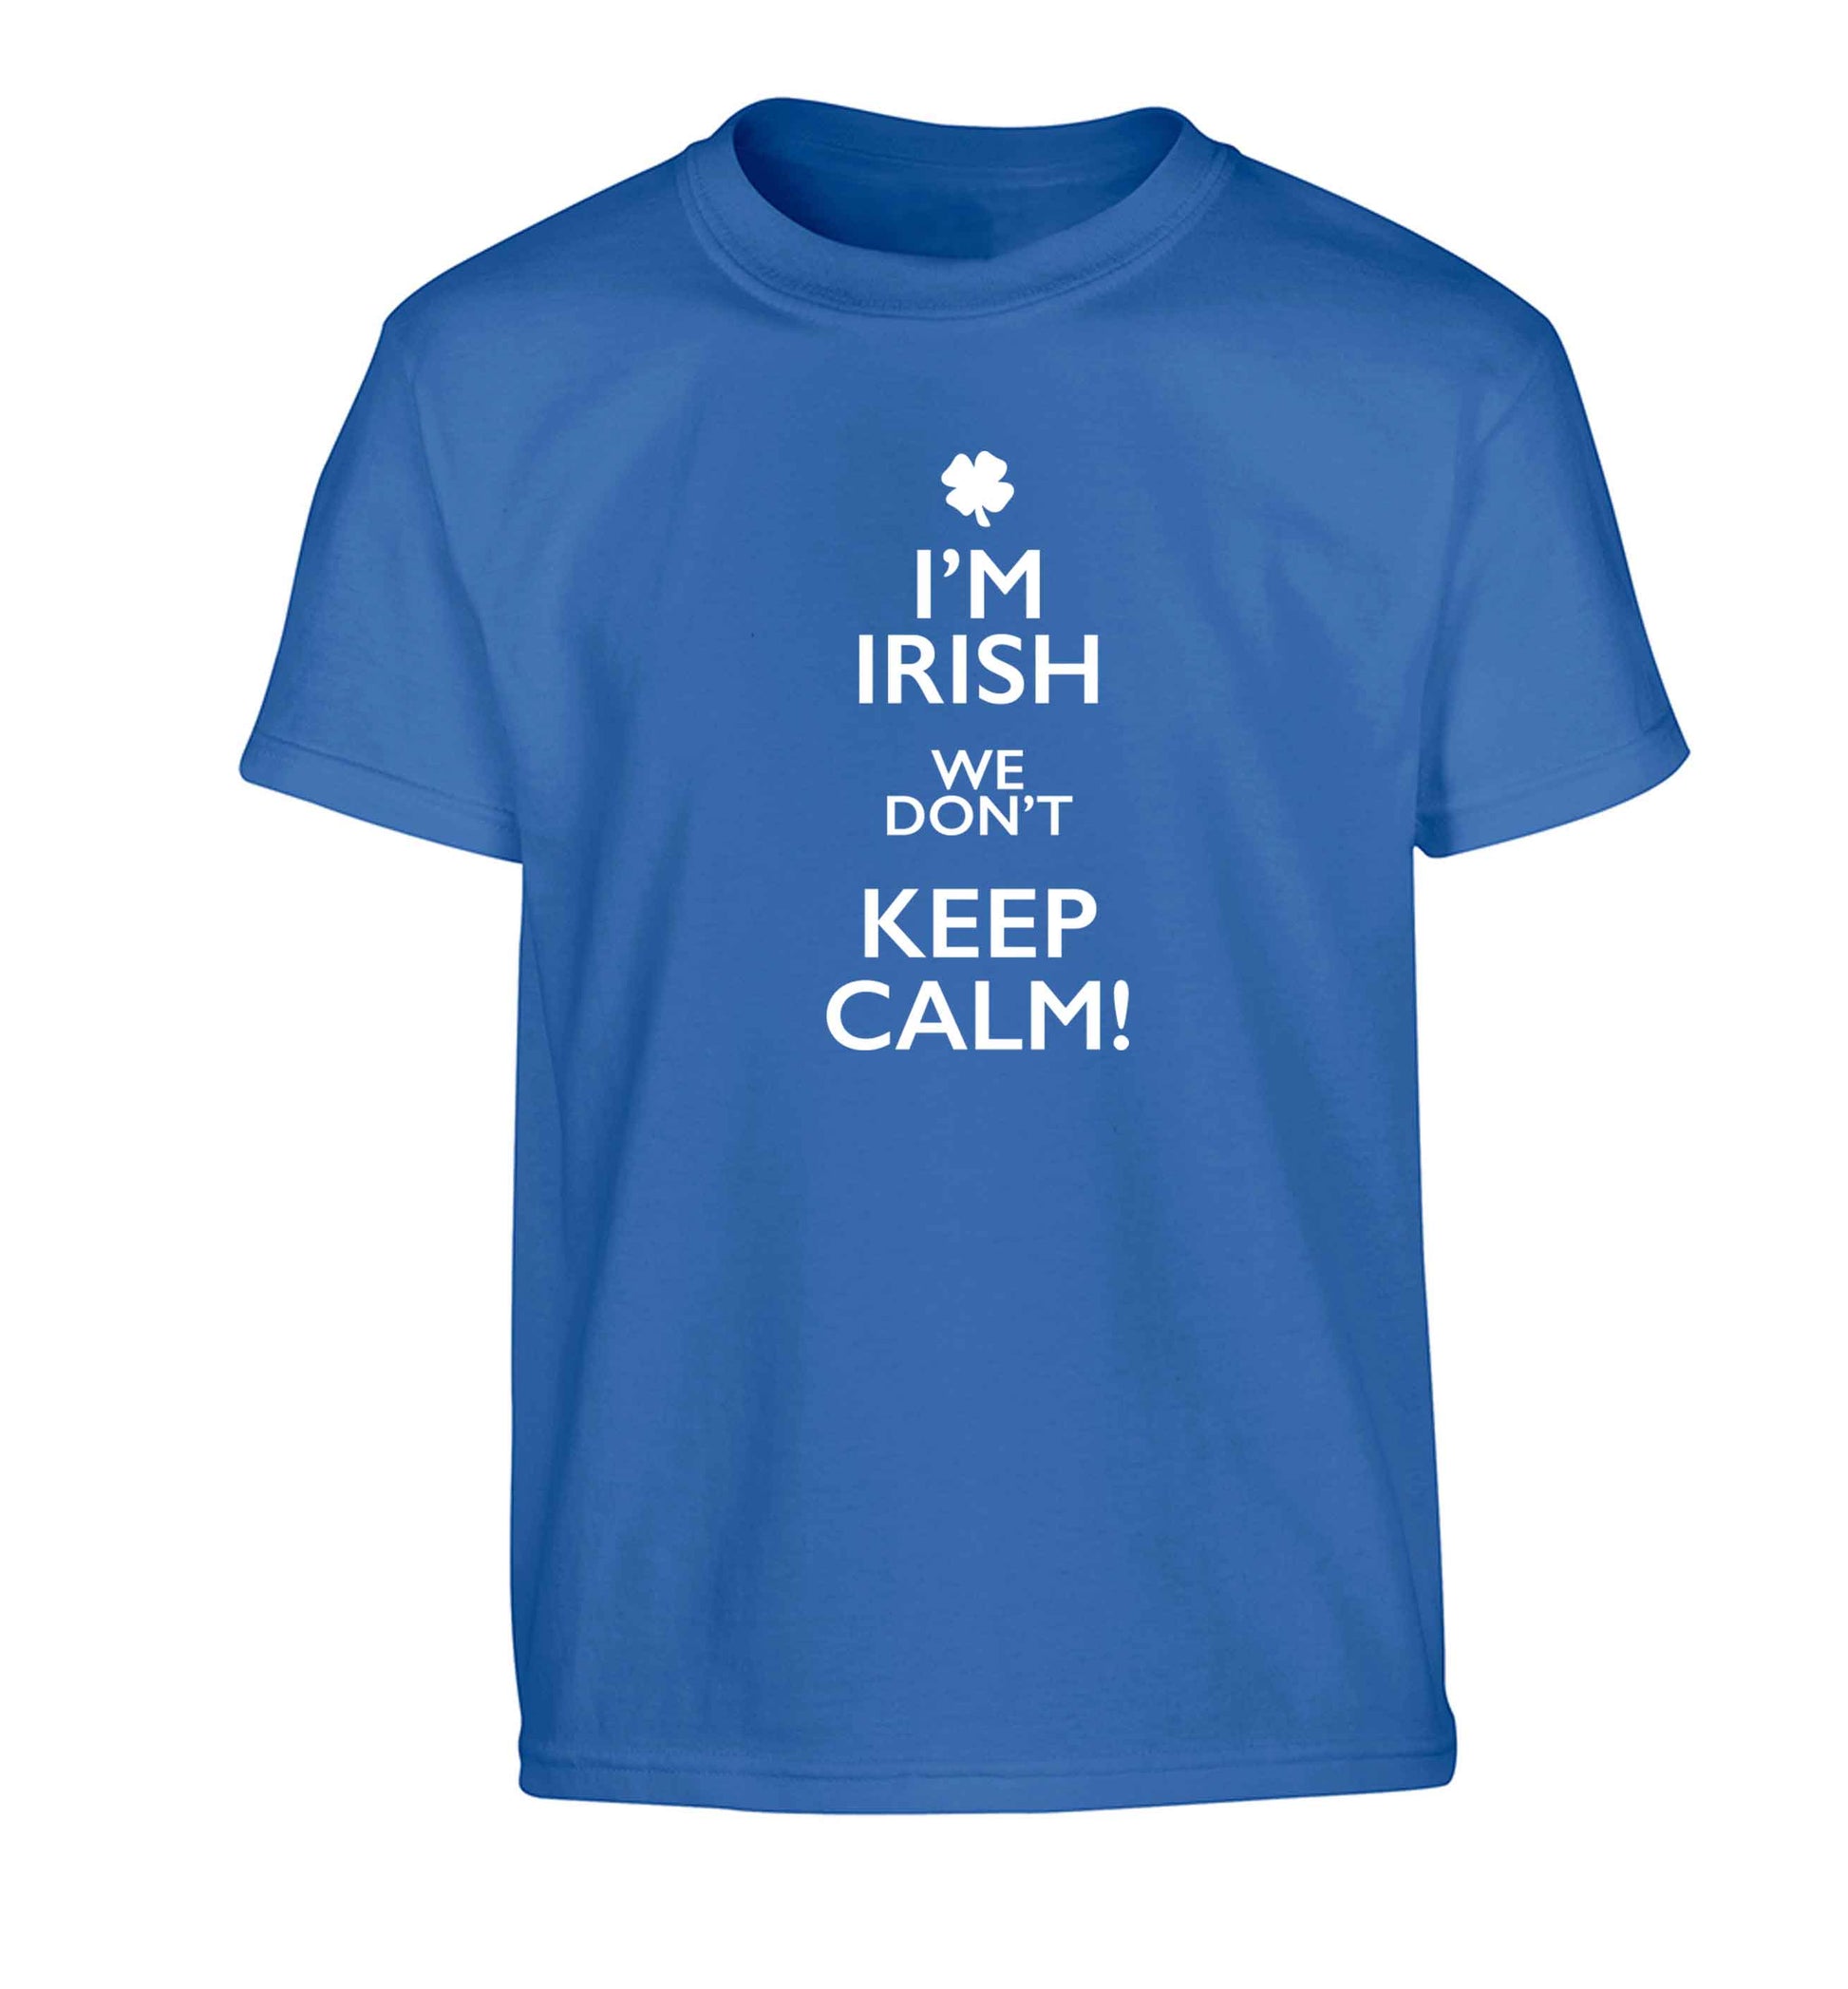 I'm Irish we don't keep calm Children's blue Tshirt 12-13 Years